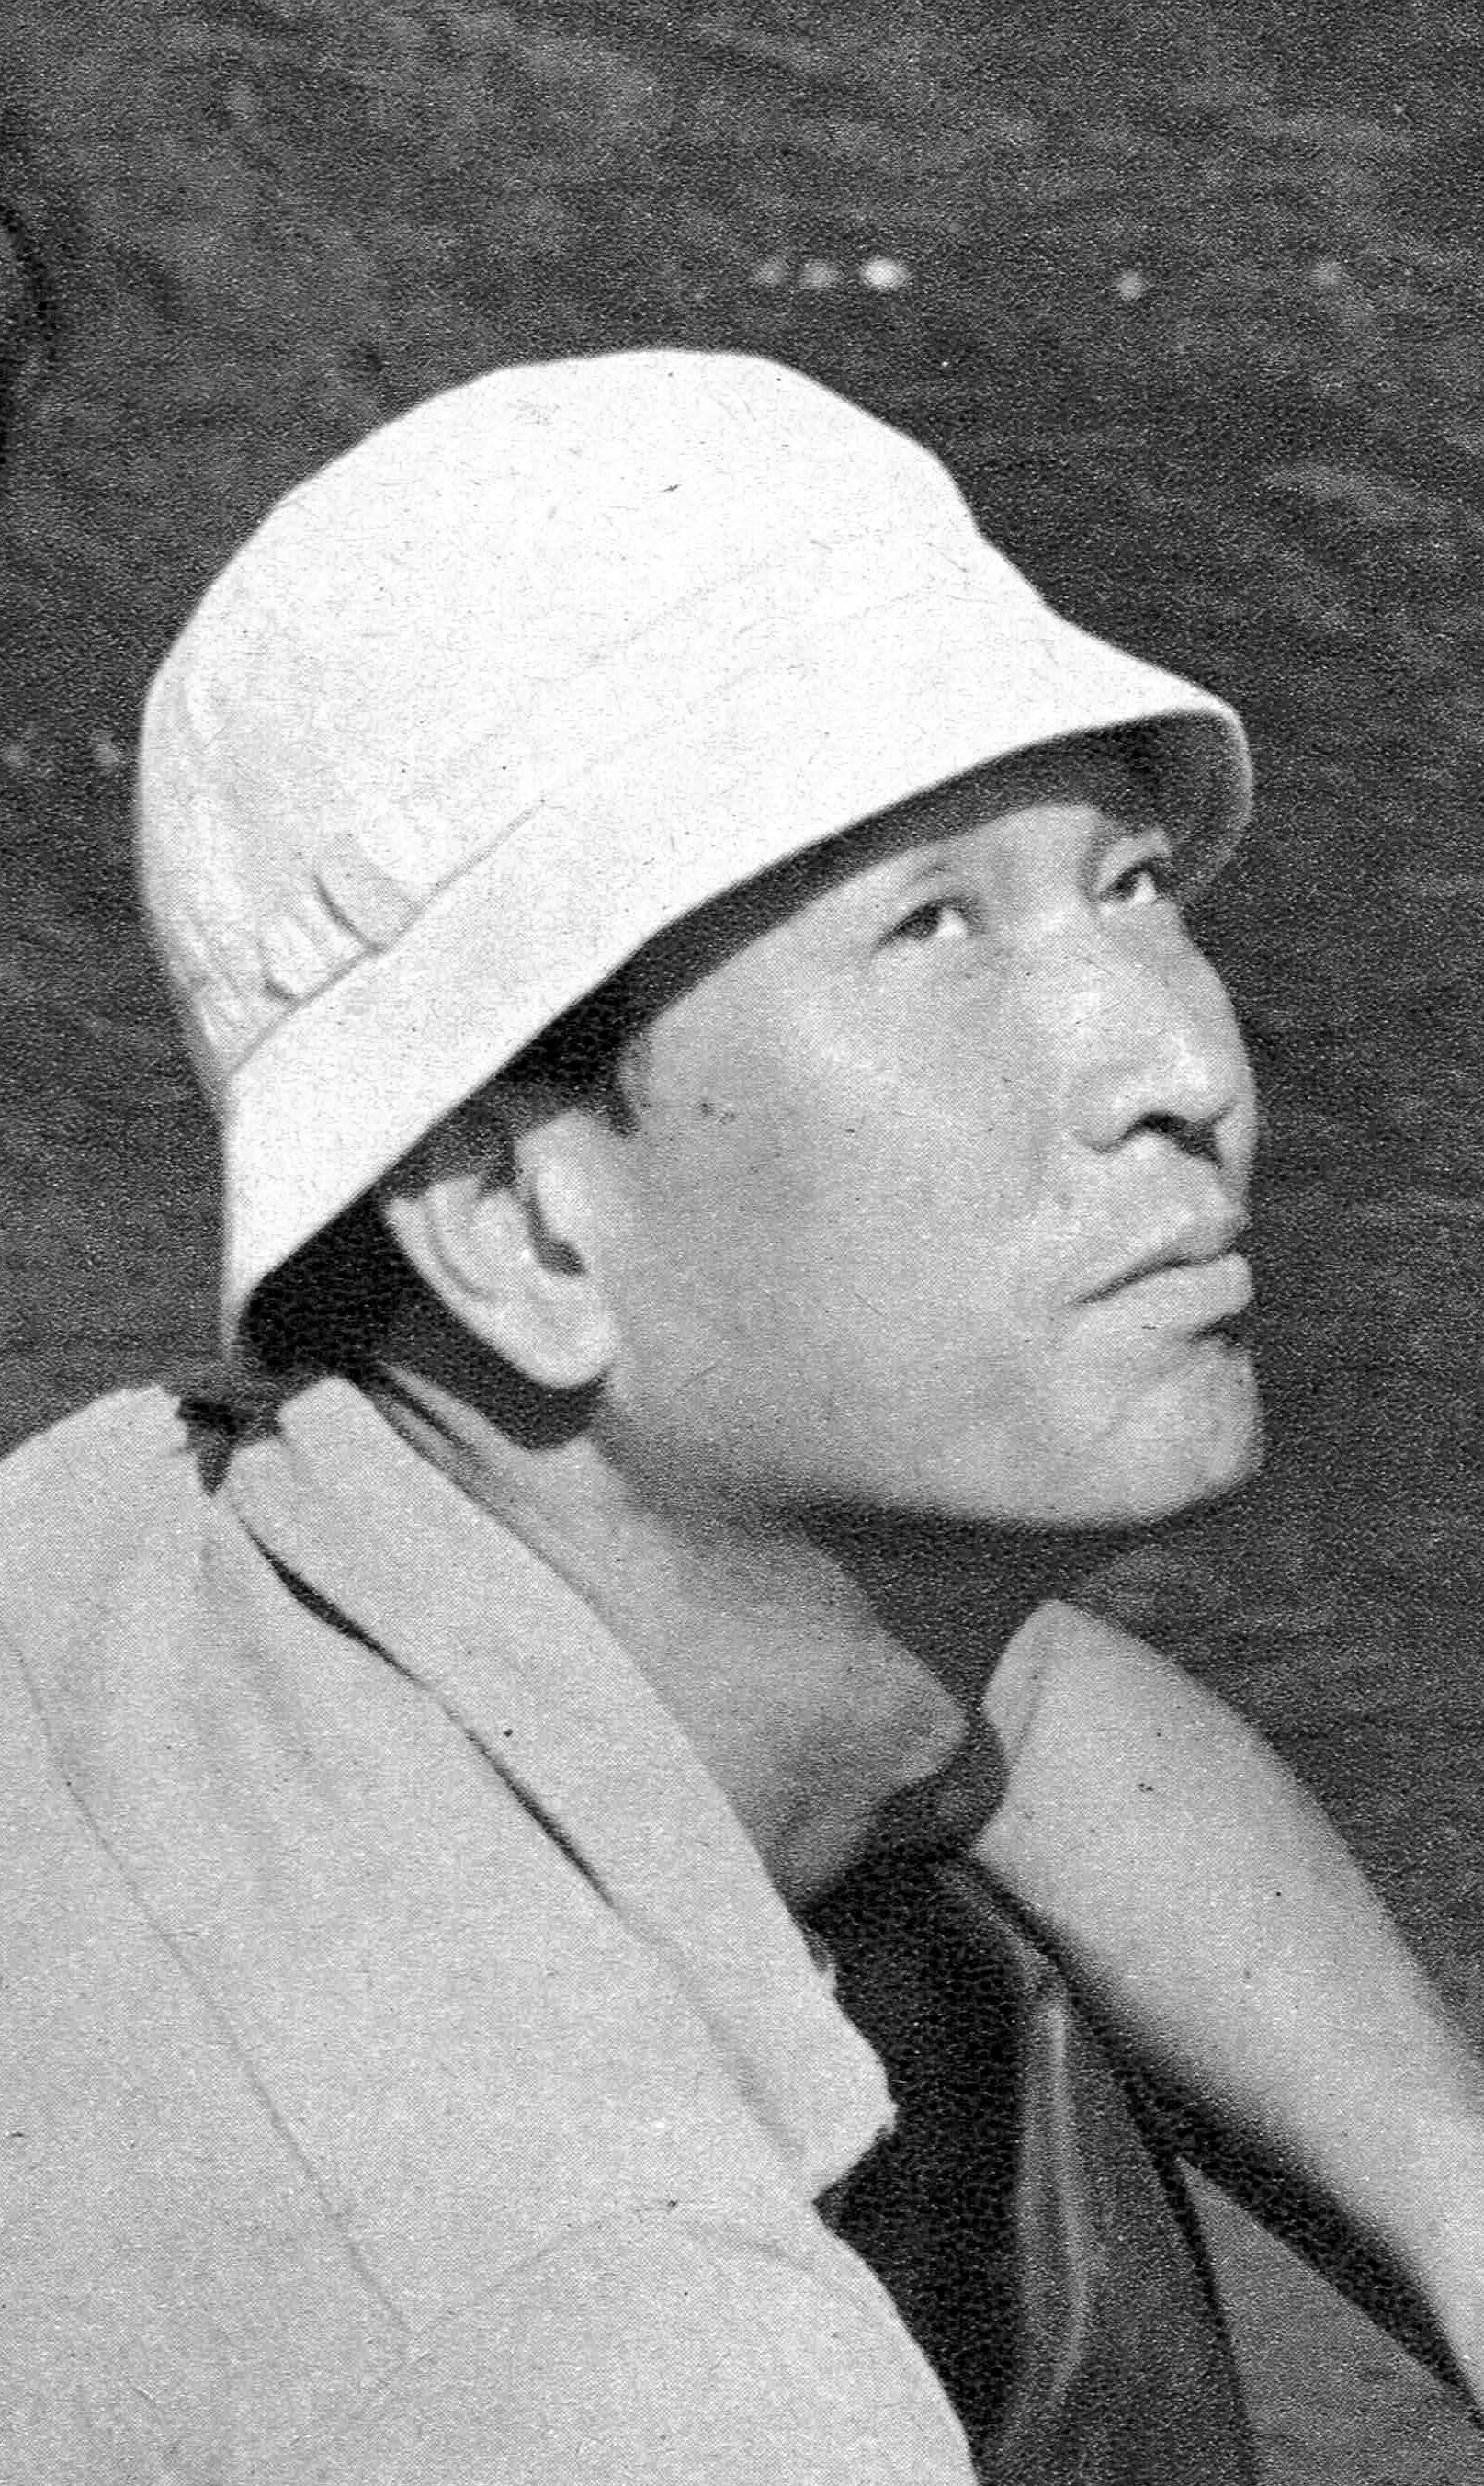 auteur Akira Kurosawa de la citation Je ne suis pas une personne spéciale, je ne suis pas particulièrement fort; Je ne suis pas particulièrement doué. Je n'aime tout simplement pas montrer ma faiblesse, et je déteste perdre, donc je suis une personne qui essaie dur. C'est tout ce qu'il y a pour moi.